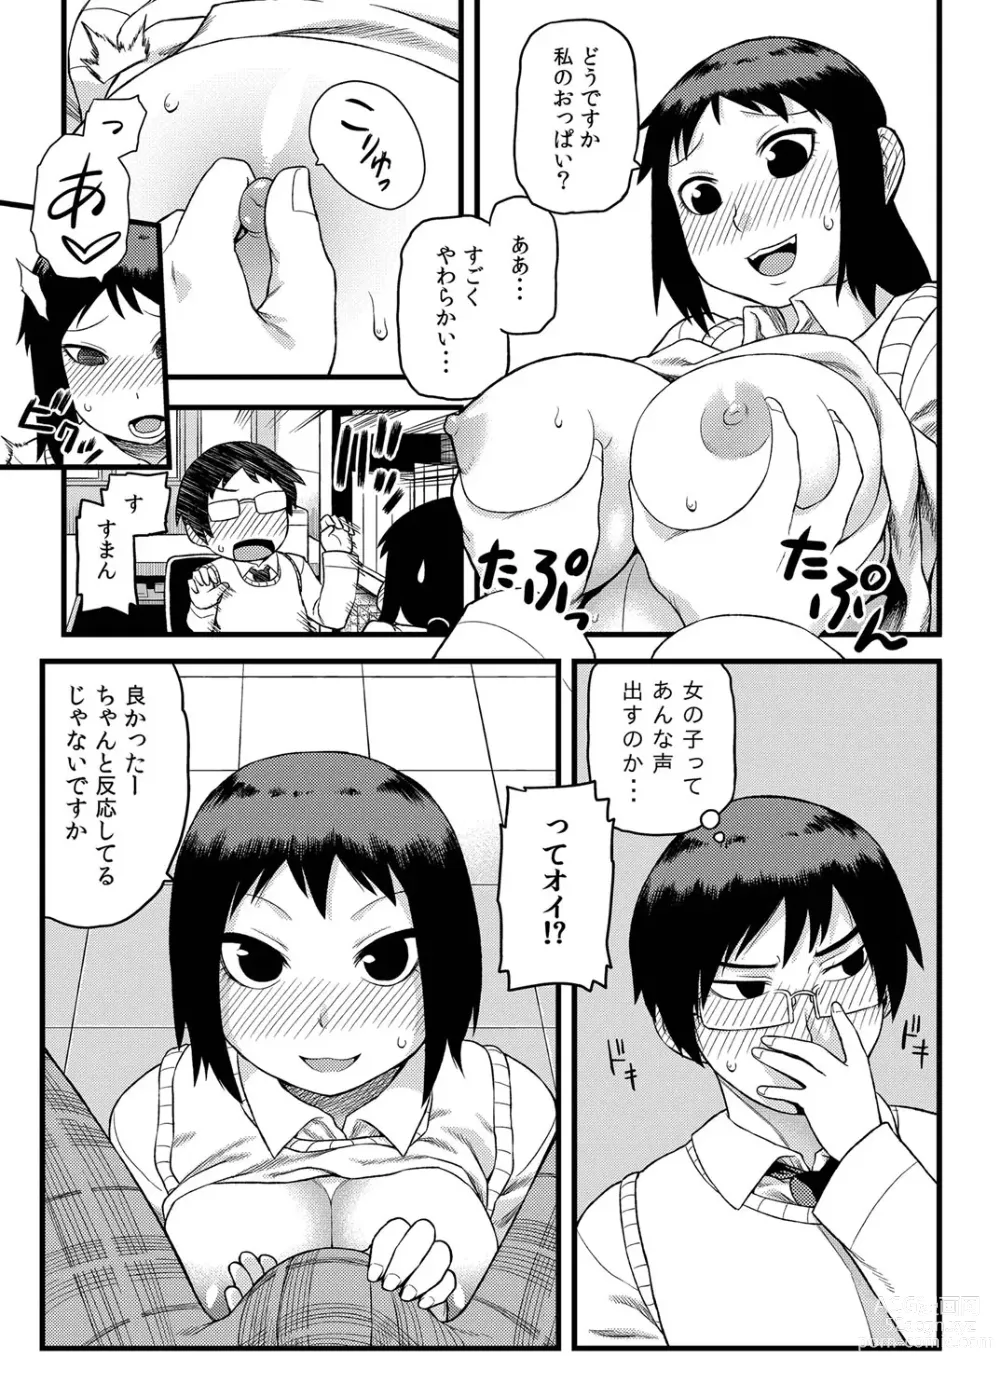 Page 6 of manga Toshoshitsu no Senpai to.